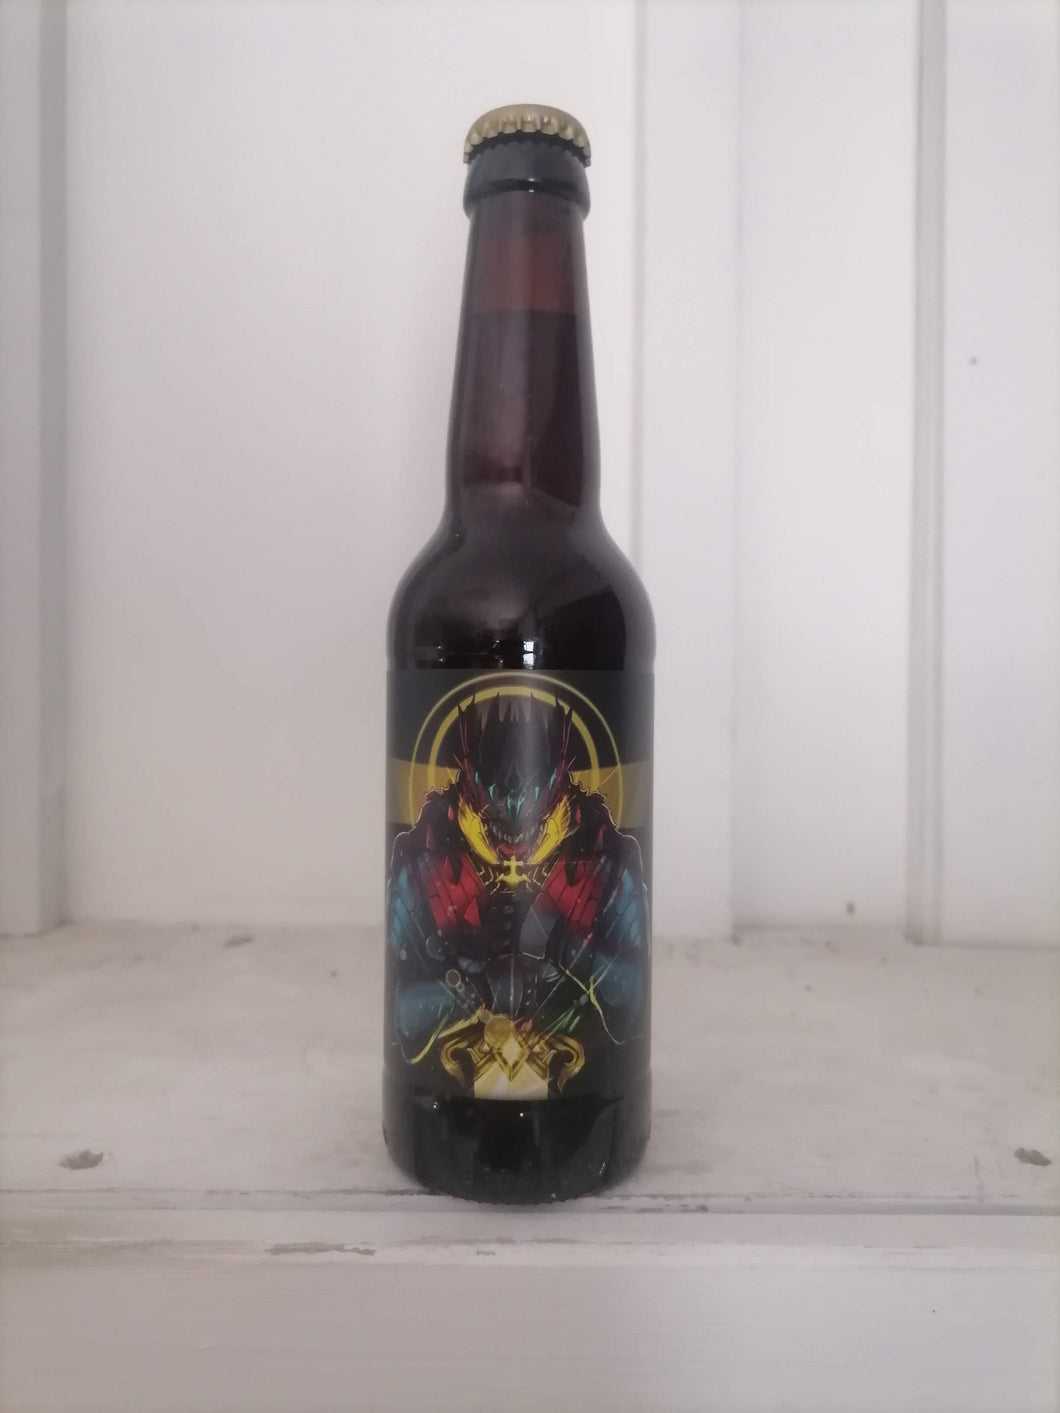 Tartarus King Arthur 13.2% (330ml bottle)